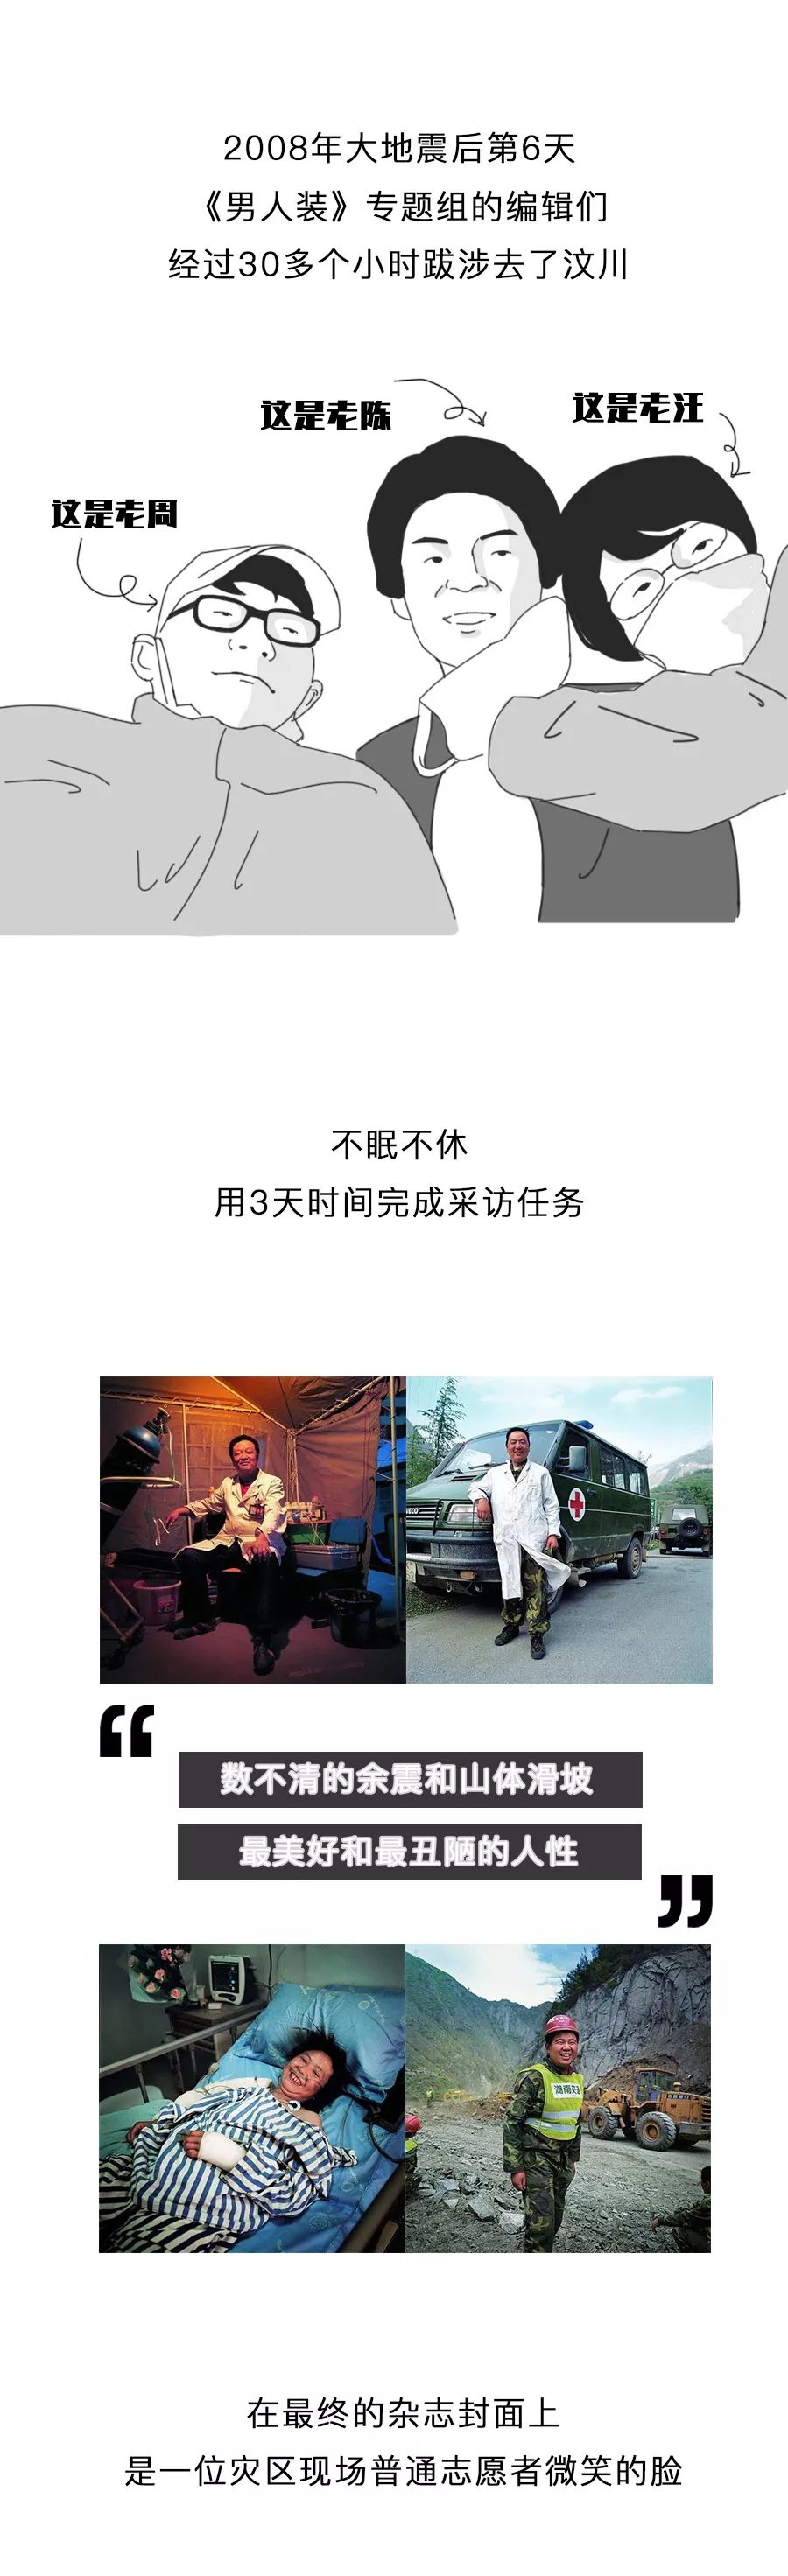 中国时尚杂志封面图鉴